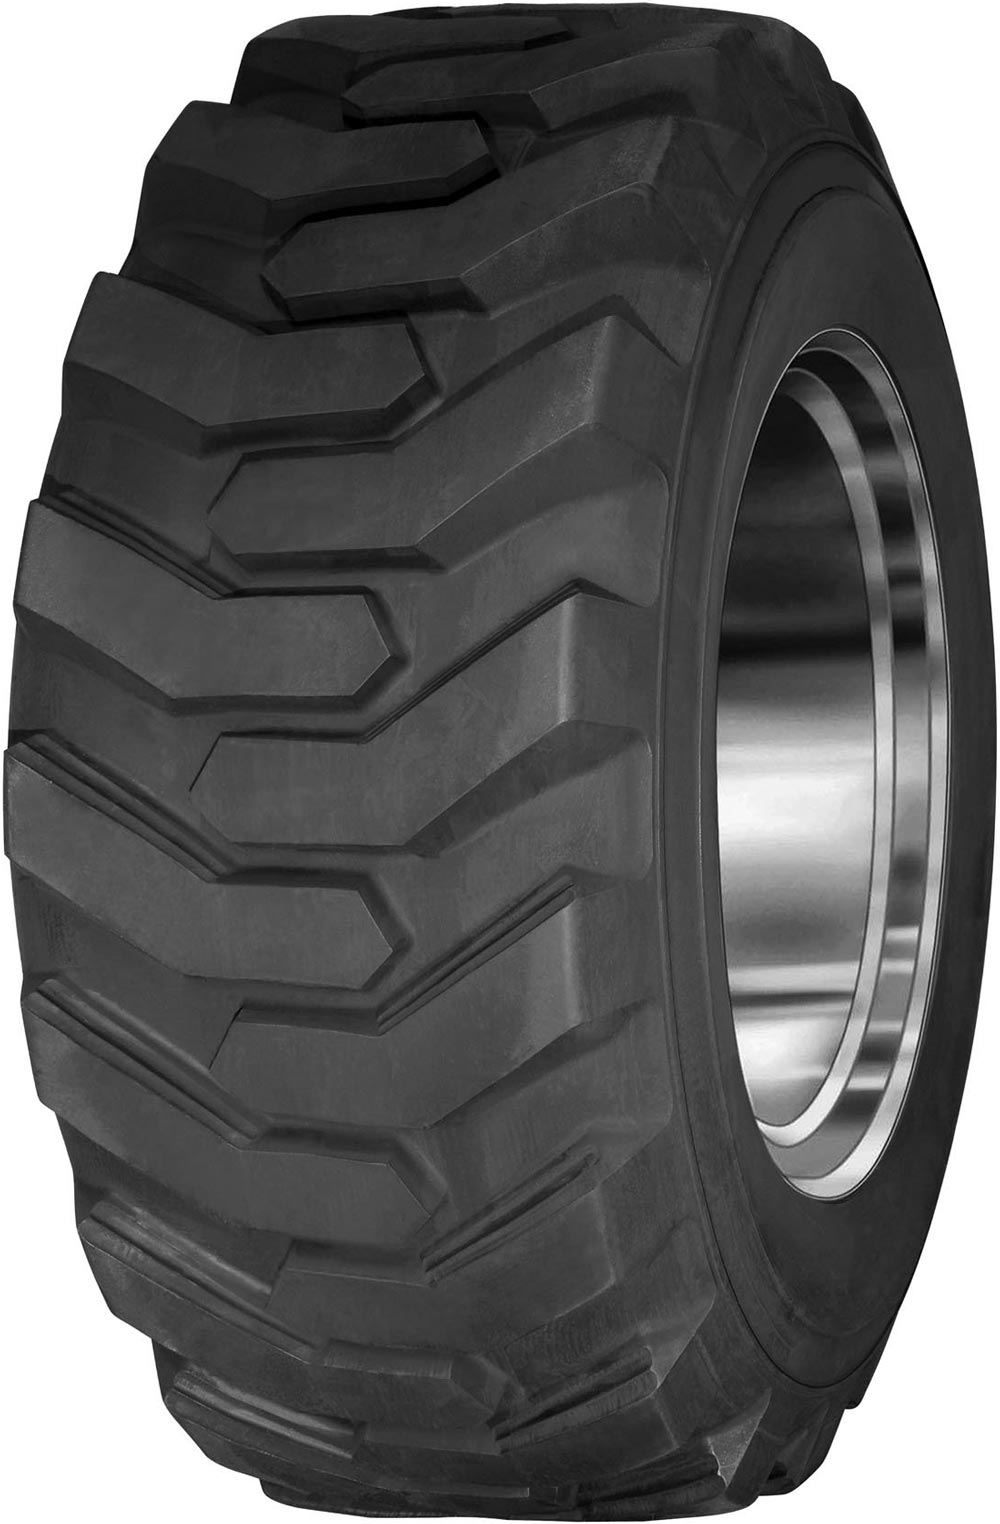 product_type-industrial_tires CULTOR SKID STEER 20 8PR TL 10 R16.5 P